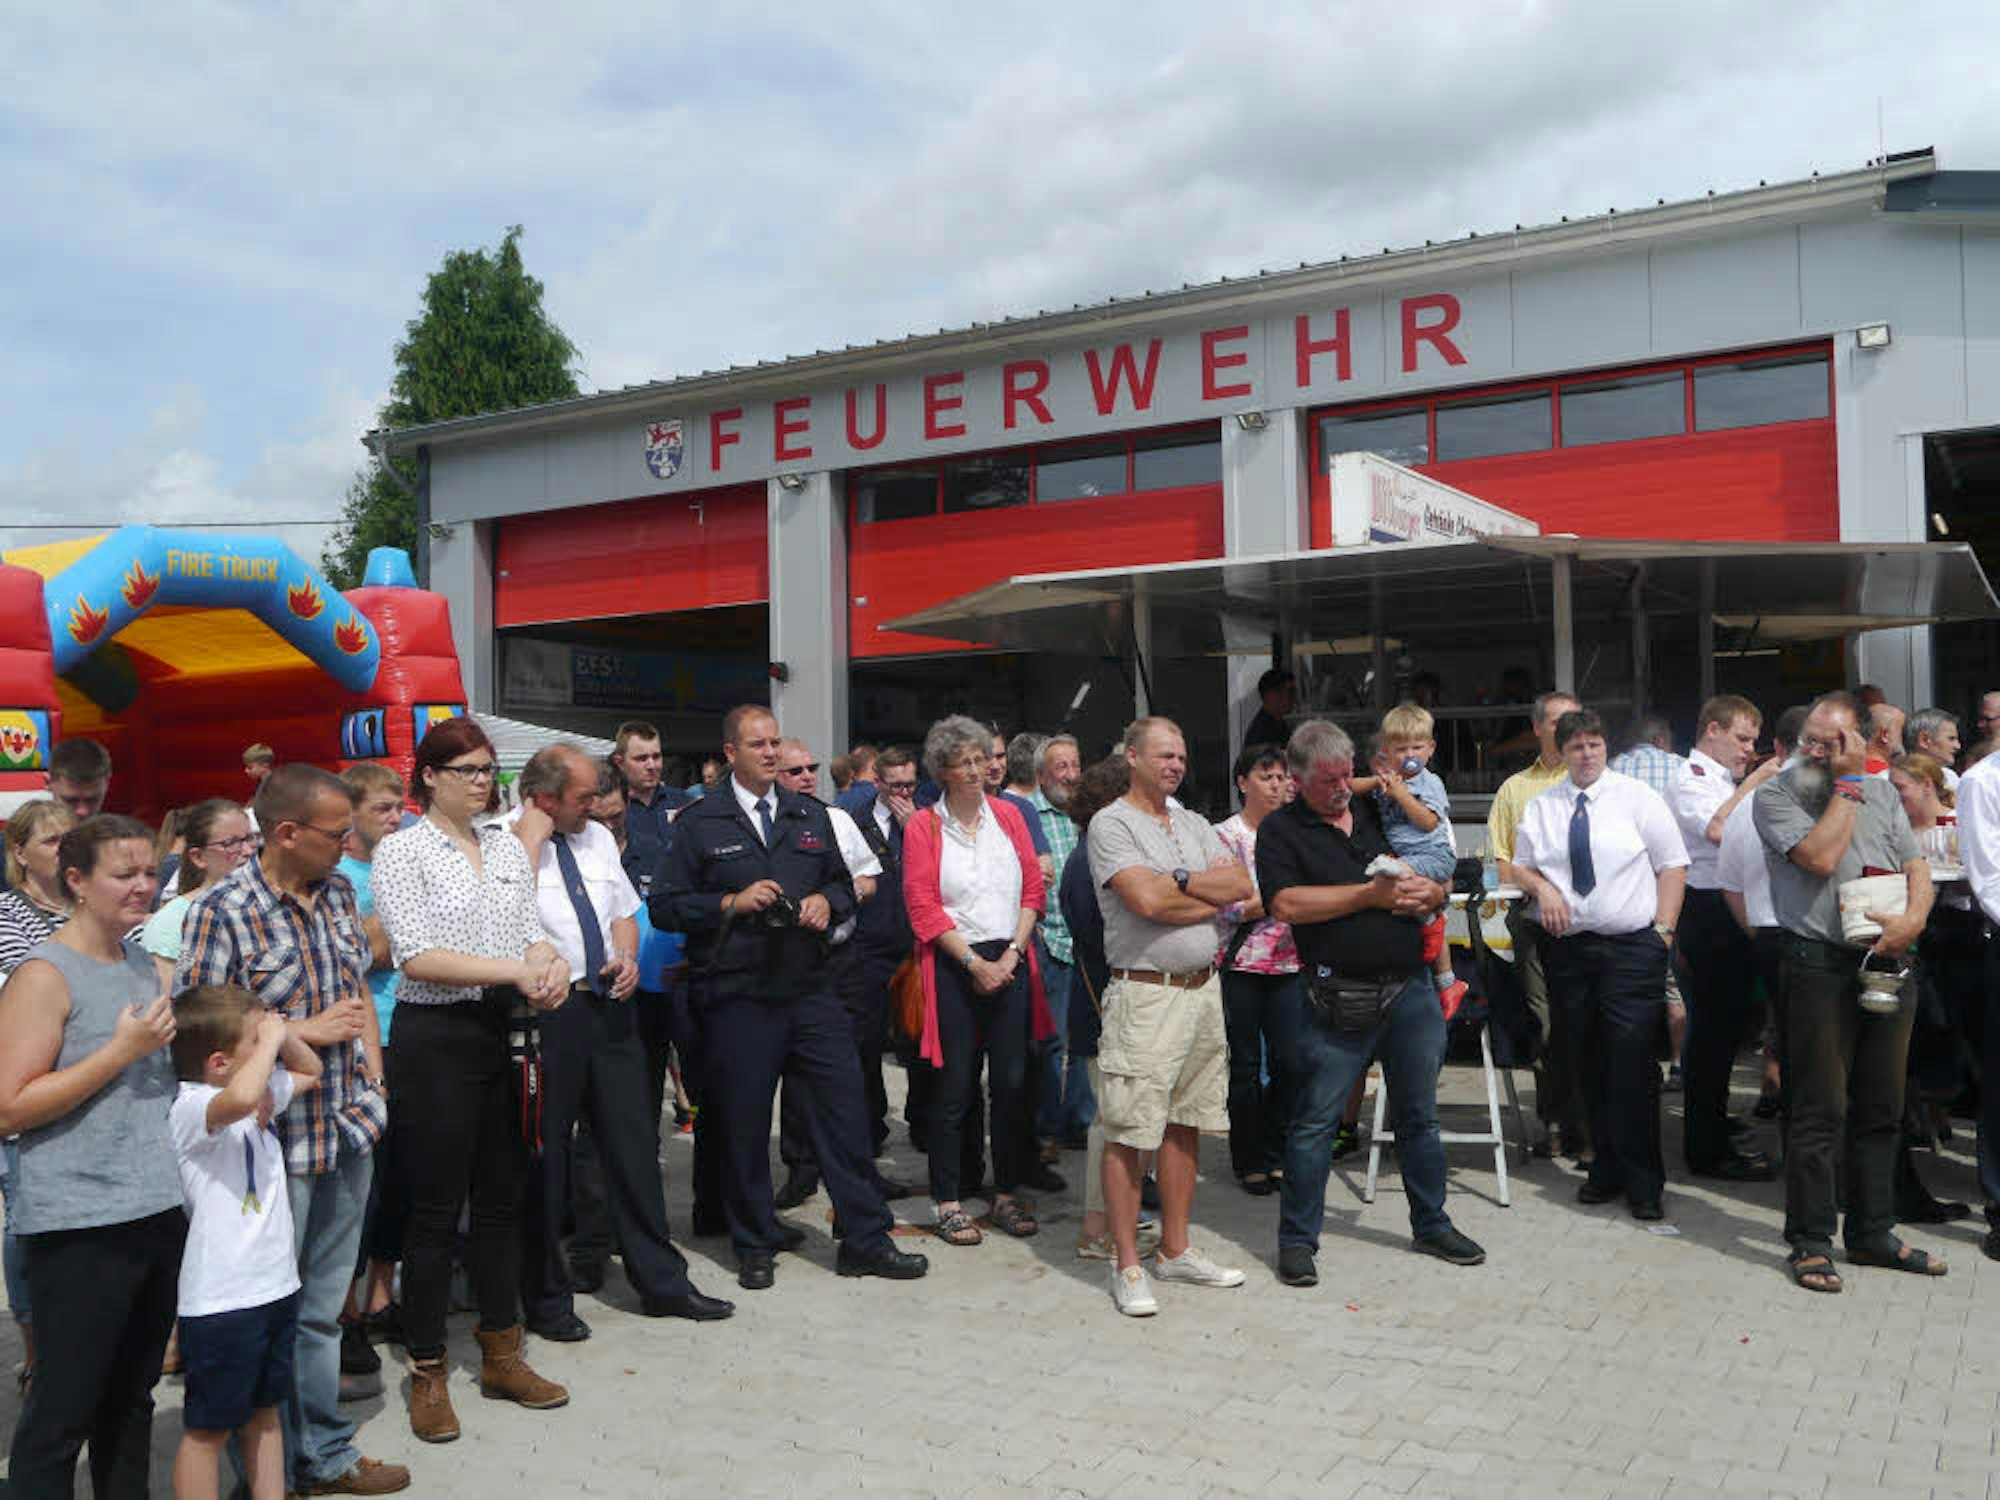 Feuerwehrleute, Angehörige und viele Gäste sahen sich beim Tag der offenen Tür im August in Rosbach die neue Halle und den Wagen an.